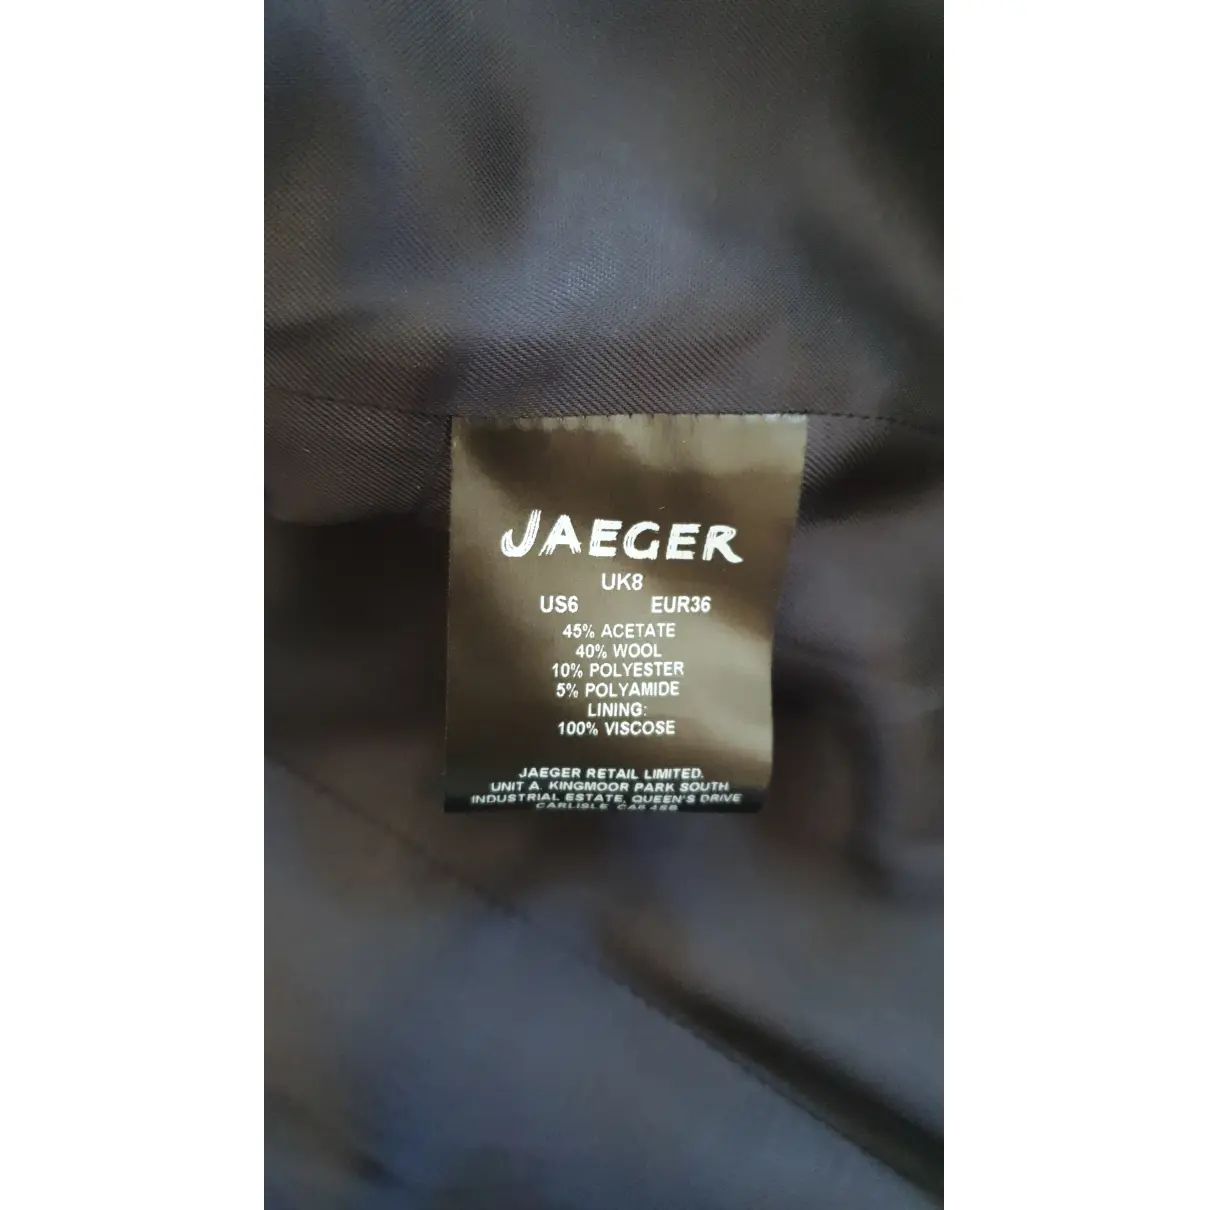 Luxury Jaeger Jackets Women